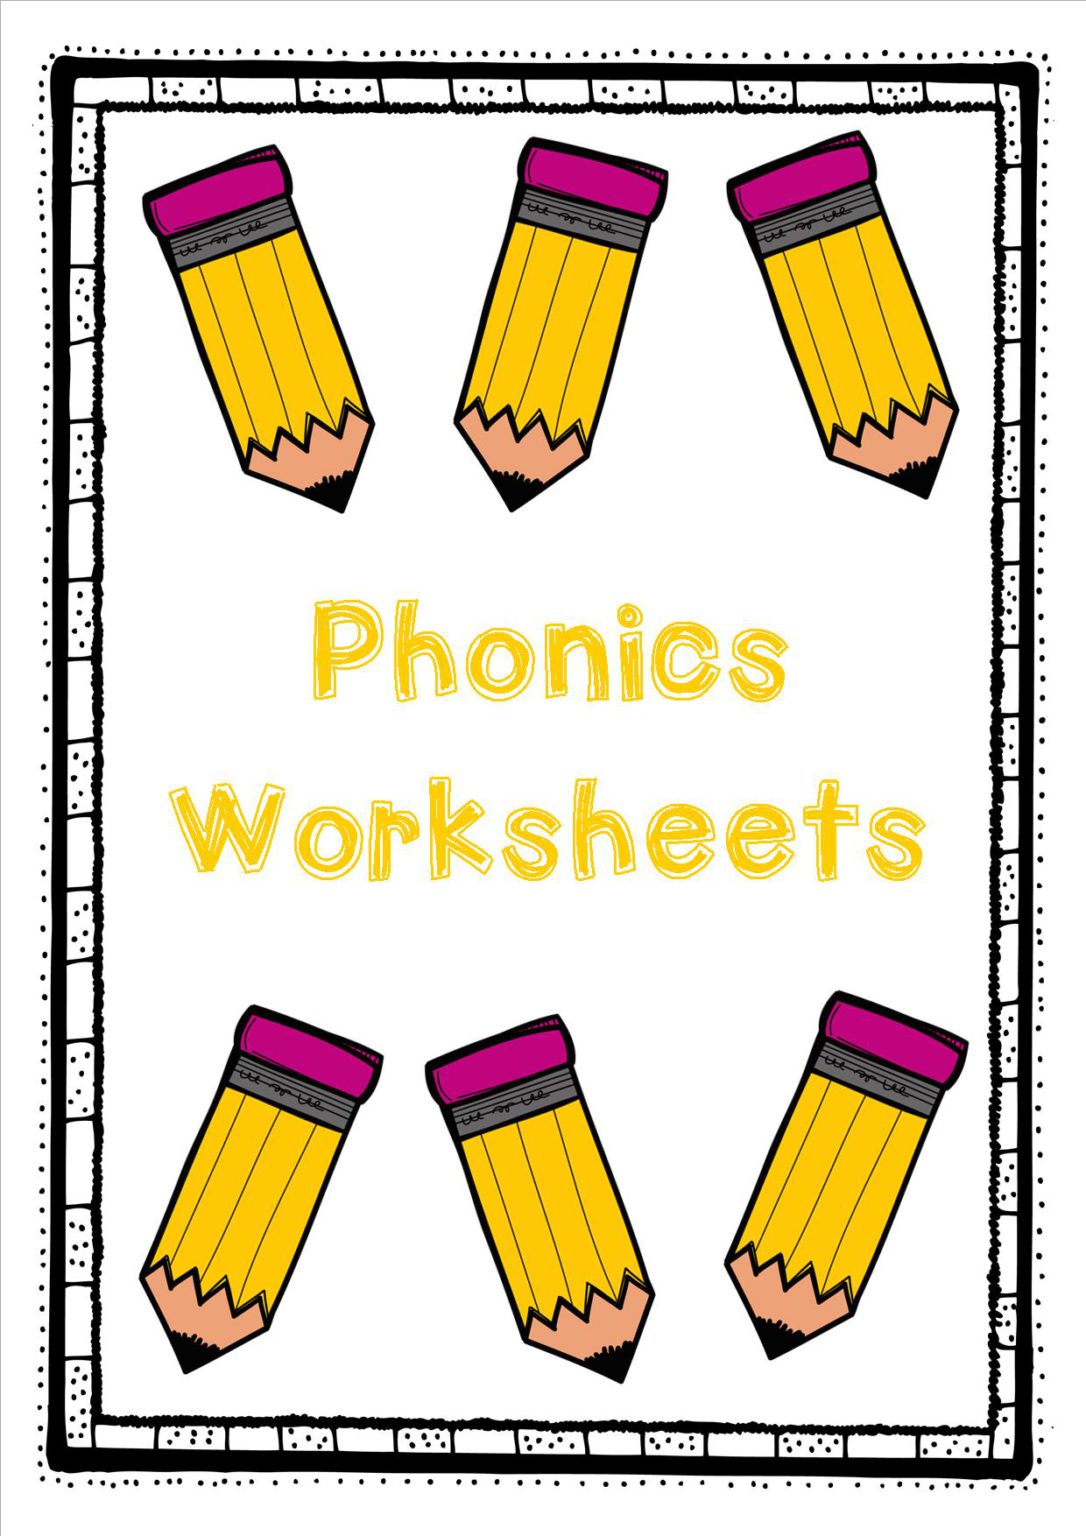 phonics-worksheets-teacha